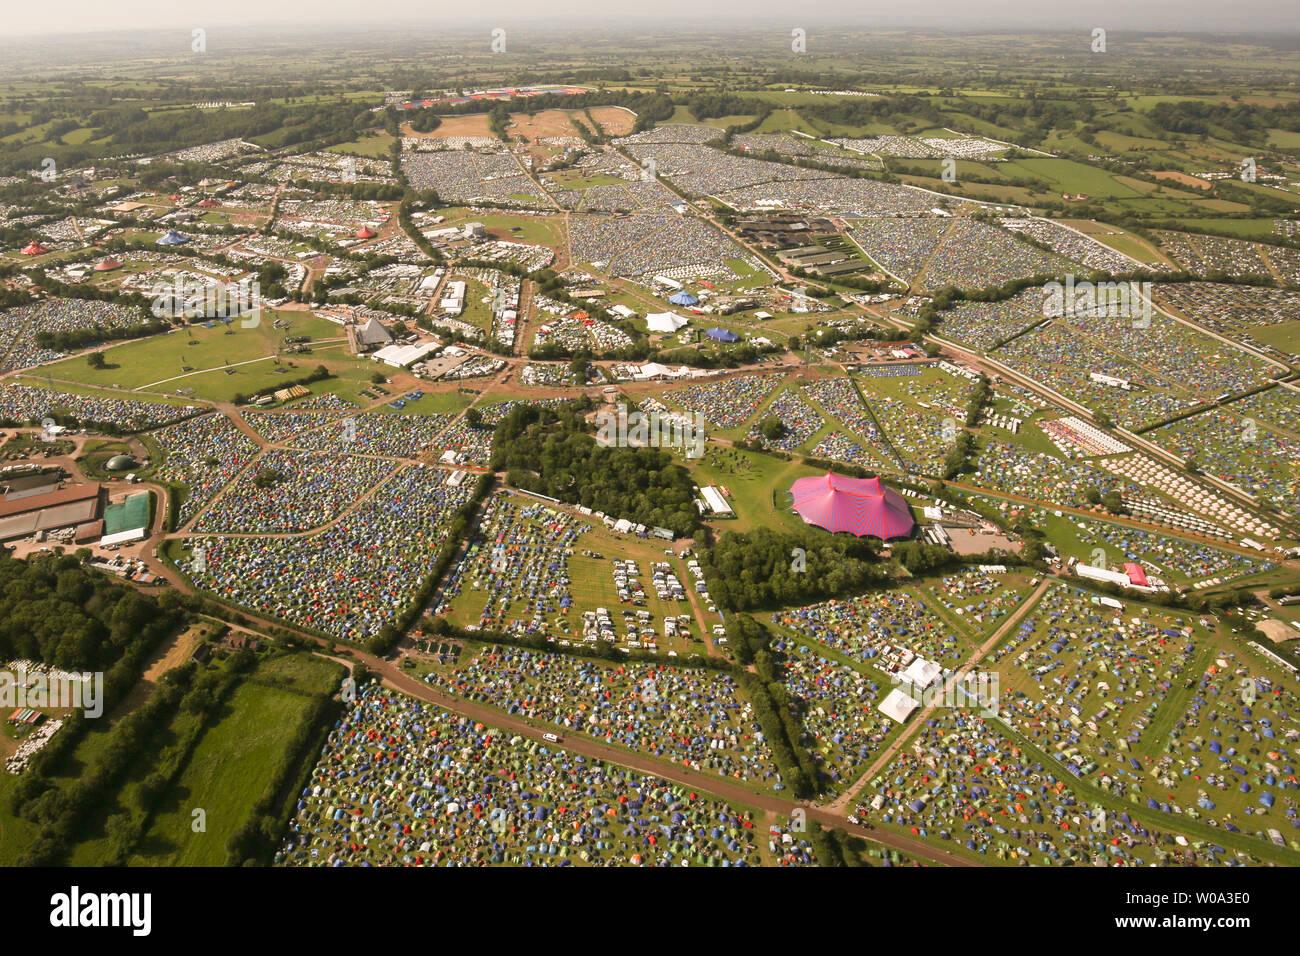 Una veduta aerea del festival di Glastonbury sito presso l'azienda agricola degna in Somerset. Foto Stock